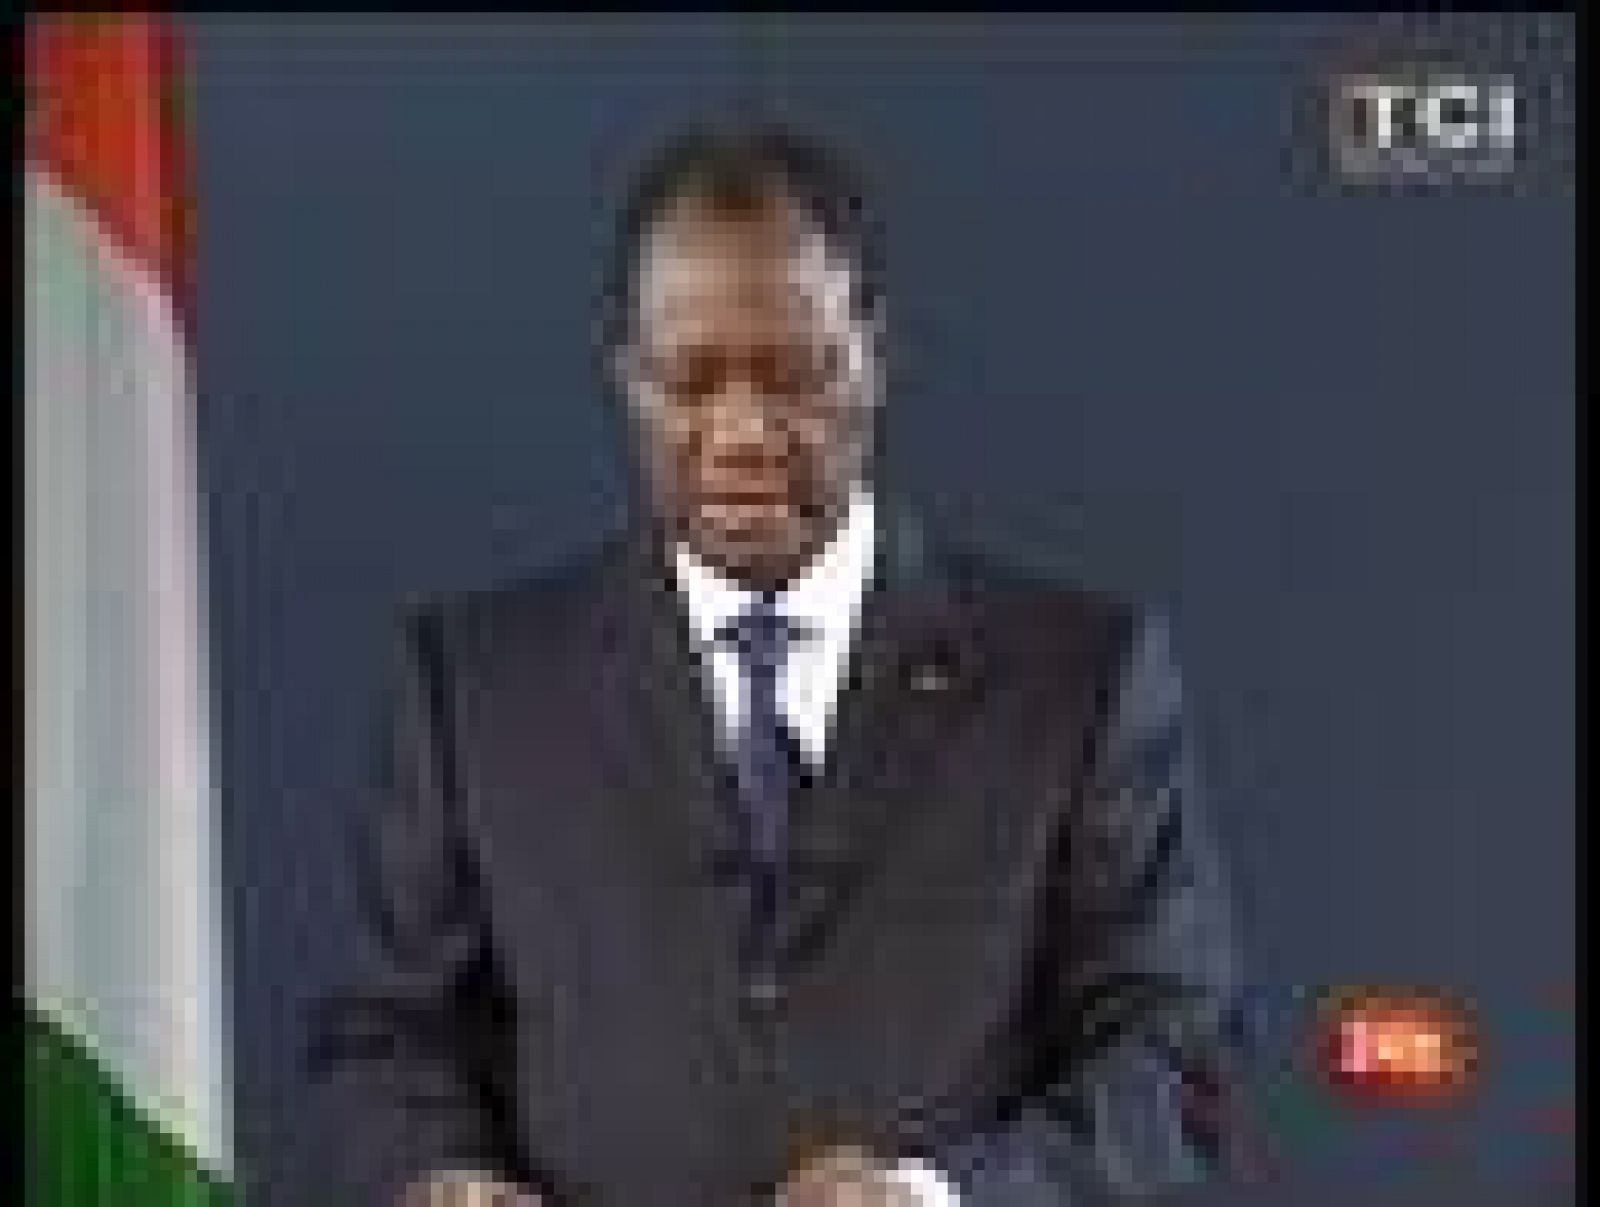 Ouattara ha comparecido en la televisión estatal para anunciar una serie de medidas con el objetivo que la actividad vuelva a la normalidad. Además, el presidente electo ha manifestado que ha ordenado el bloqueo de la residencia en la que se encuentra atrincherado el expresidente, Laurent Gbagbo.